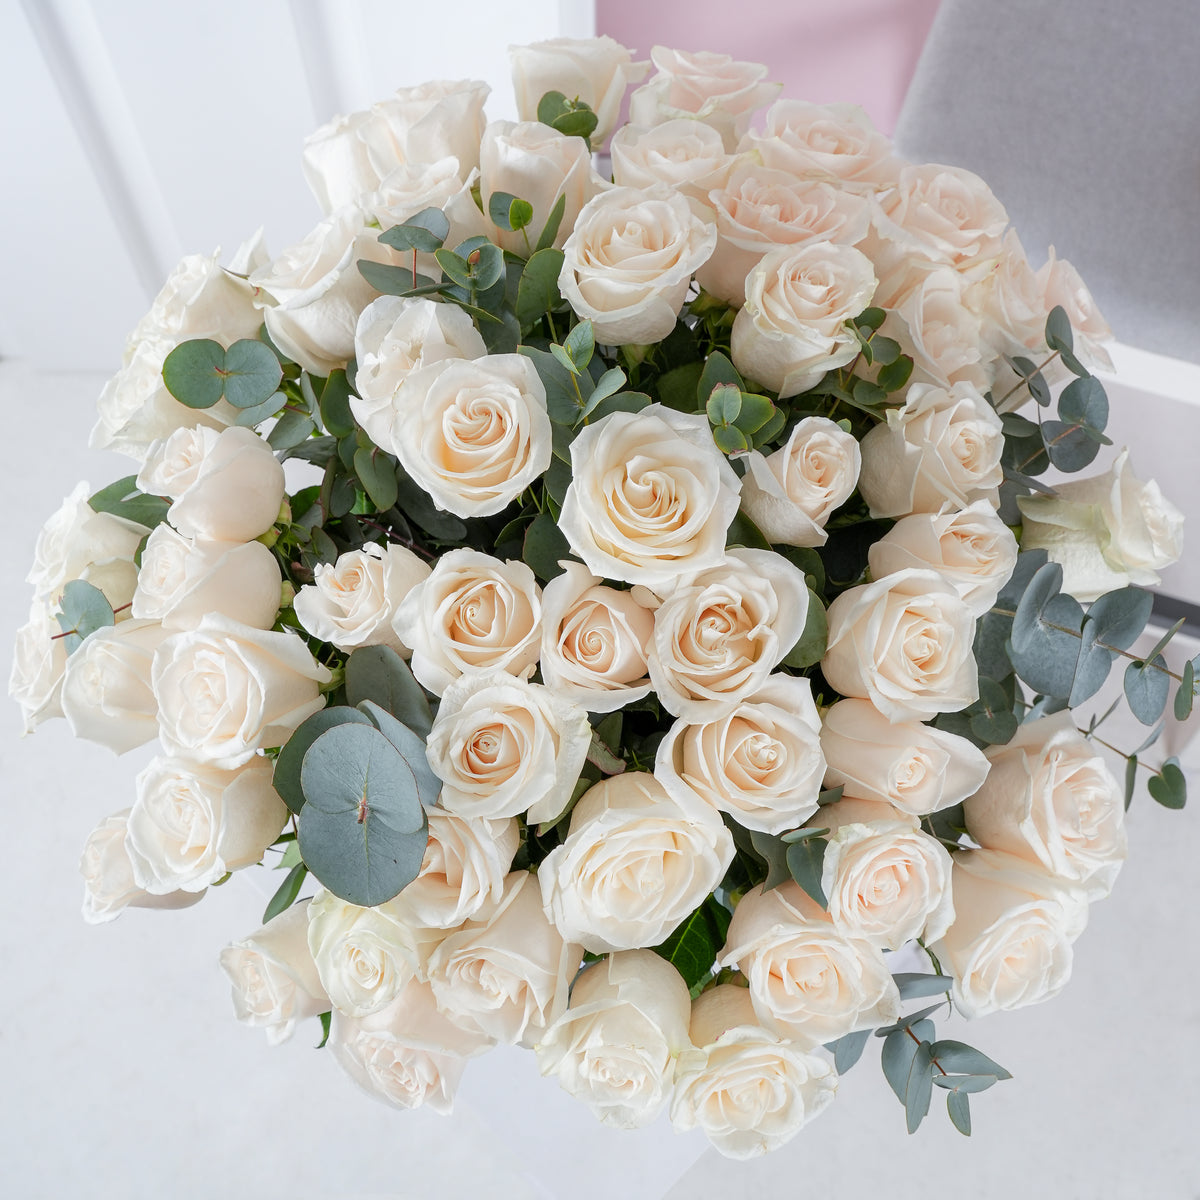 50 White Roses - Vase